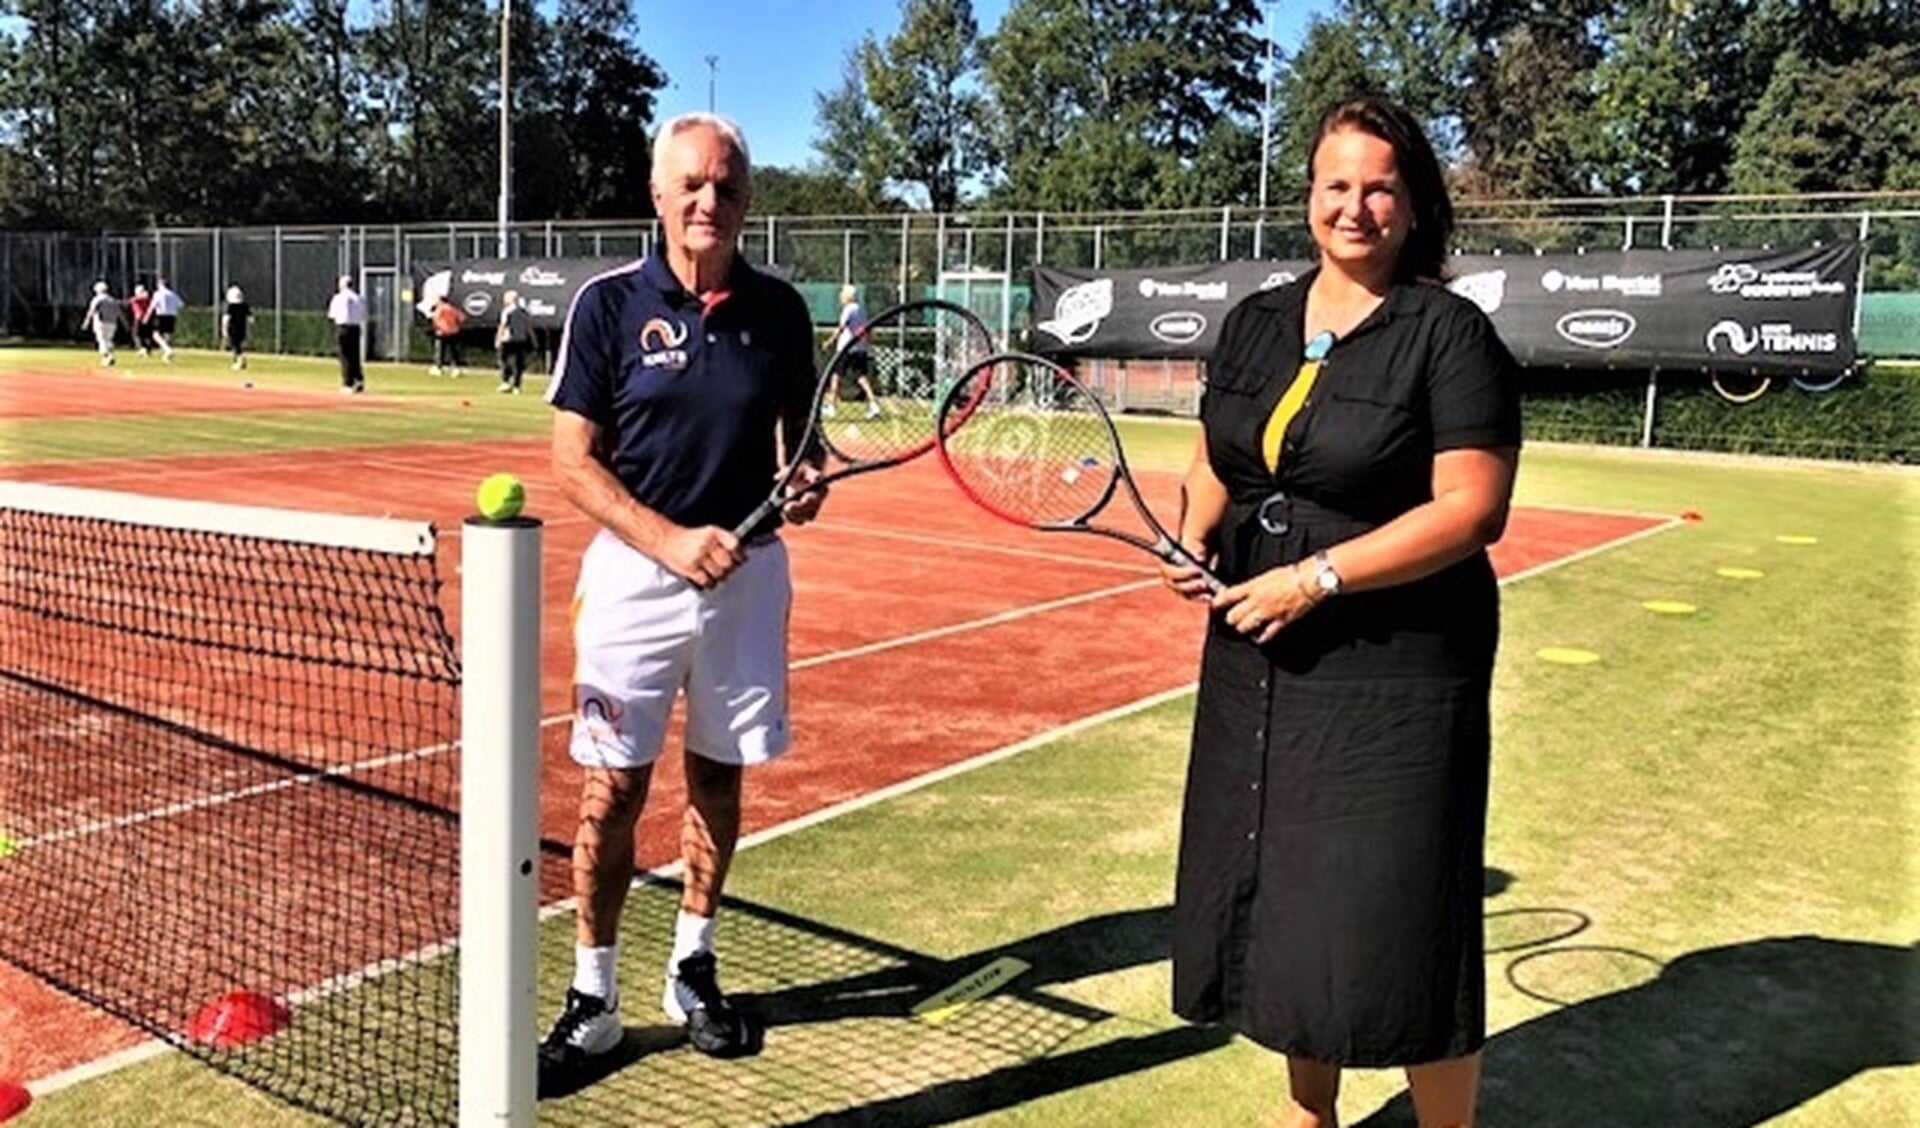 Wethouder Stemerdink speelde samen met tennislegende én OldStars ambassadeur Tom Okker een game op het centre court (foto: pr).